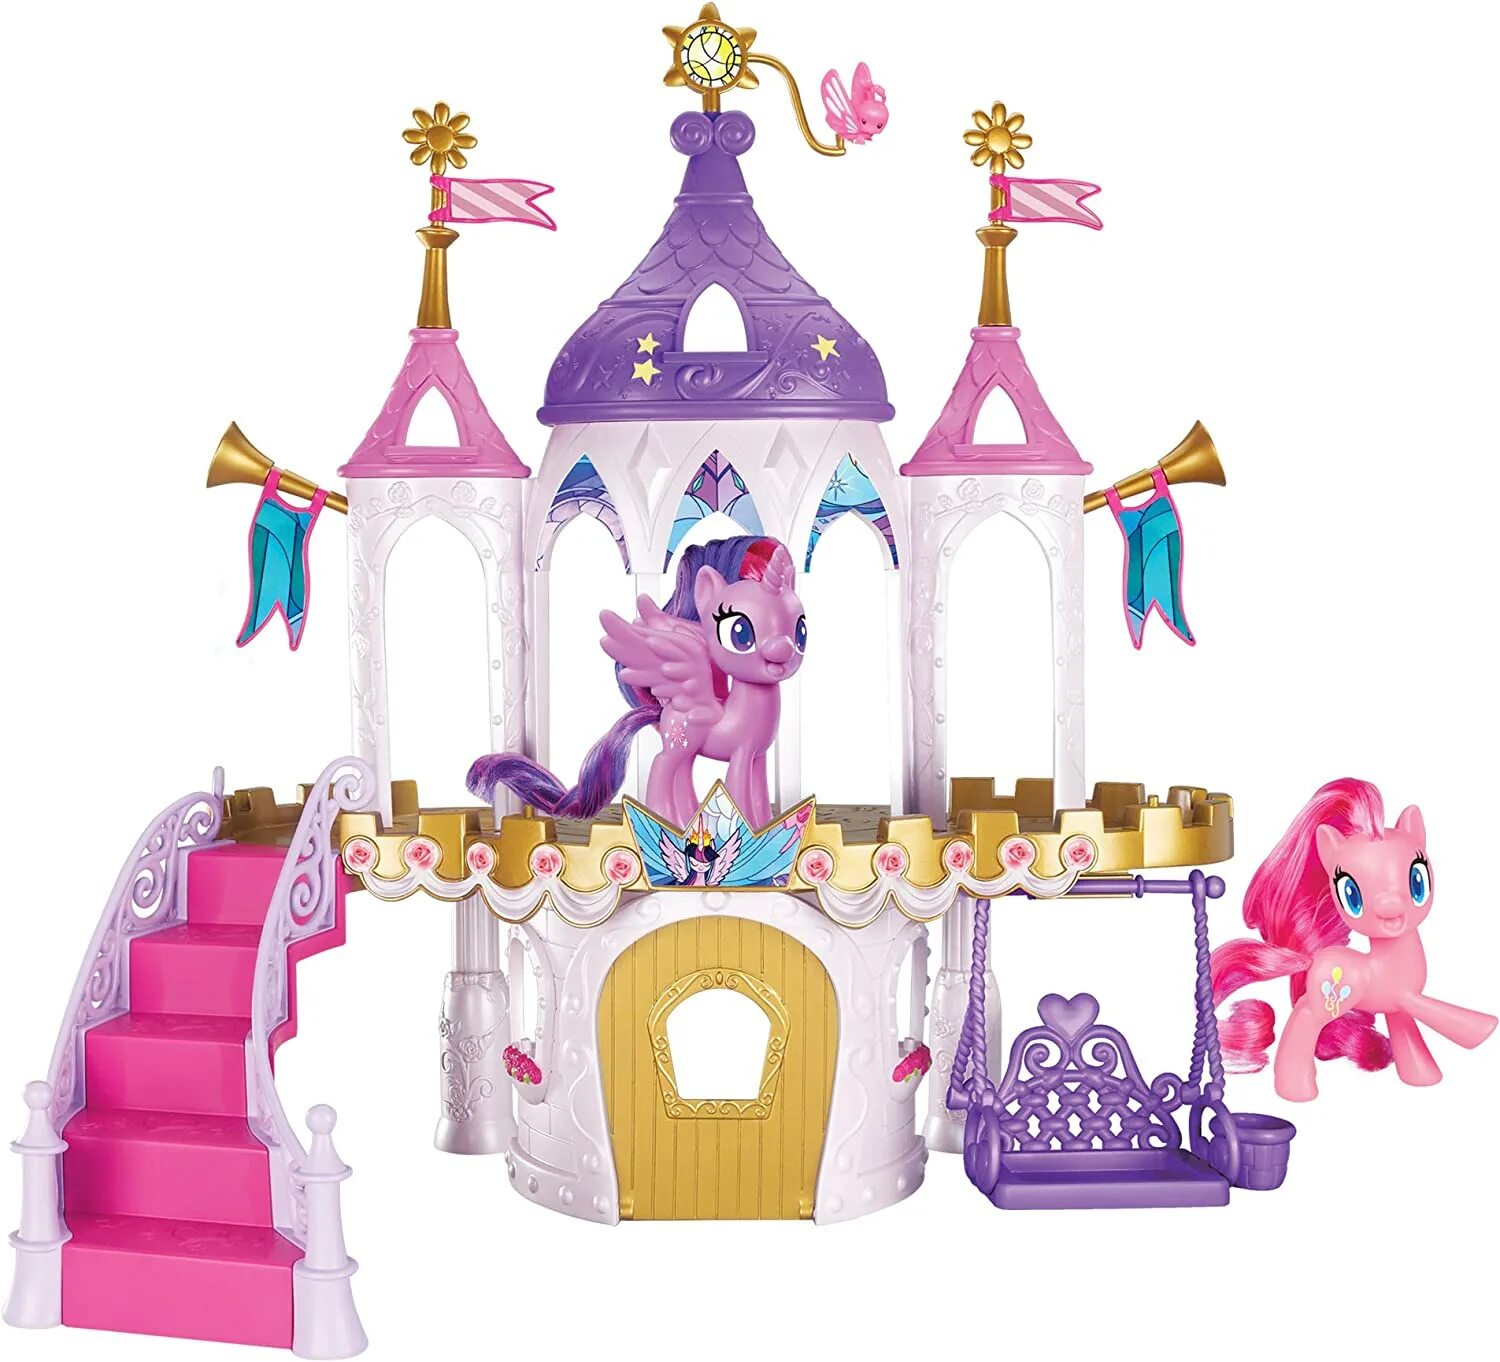 Замок пони Твайлайт Спаркл. Замок Твайлайт Спаркл игрушка. Игровой набор Hasbro my little Pony замок принцессы Твайлайт Спаркл a8213. Игровой набор замок принцессы Твайлайт Спаркл. Замок my little pony